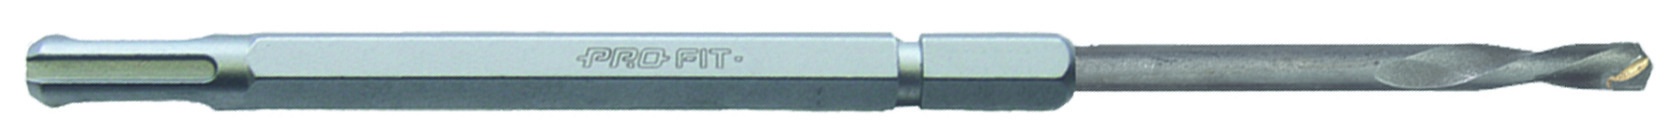 Pro-Fit HM-Lochsäge ProFit MP D 73mm NL 50mm 